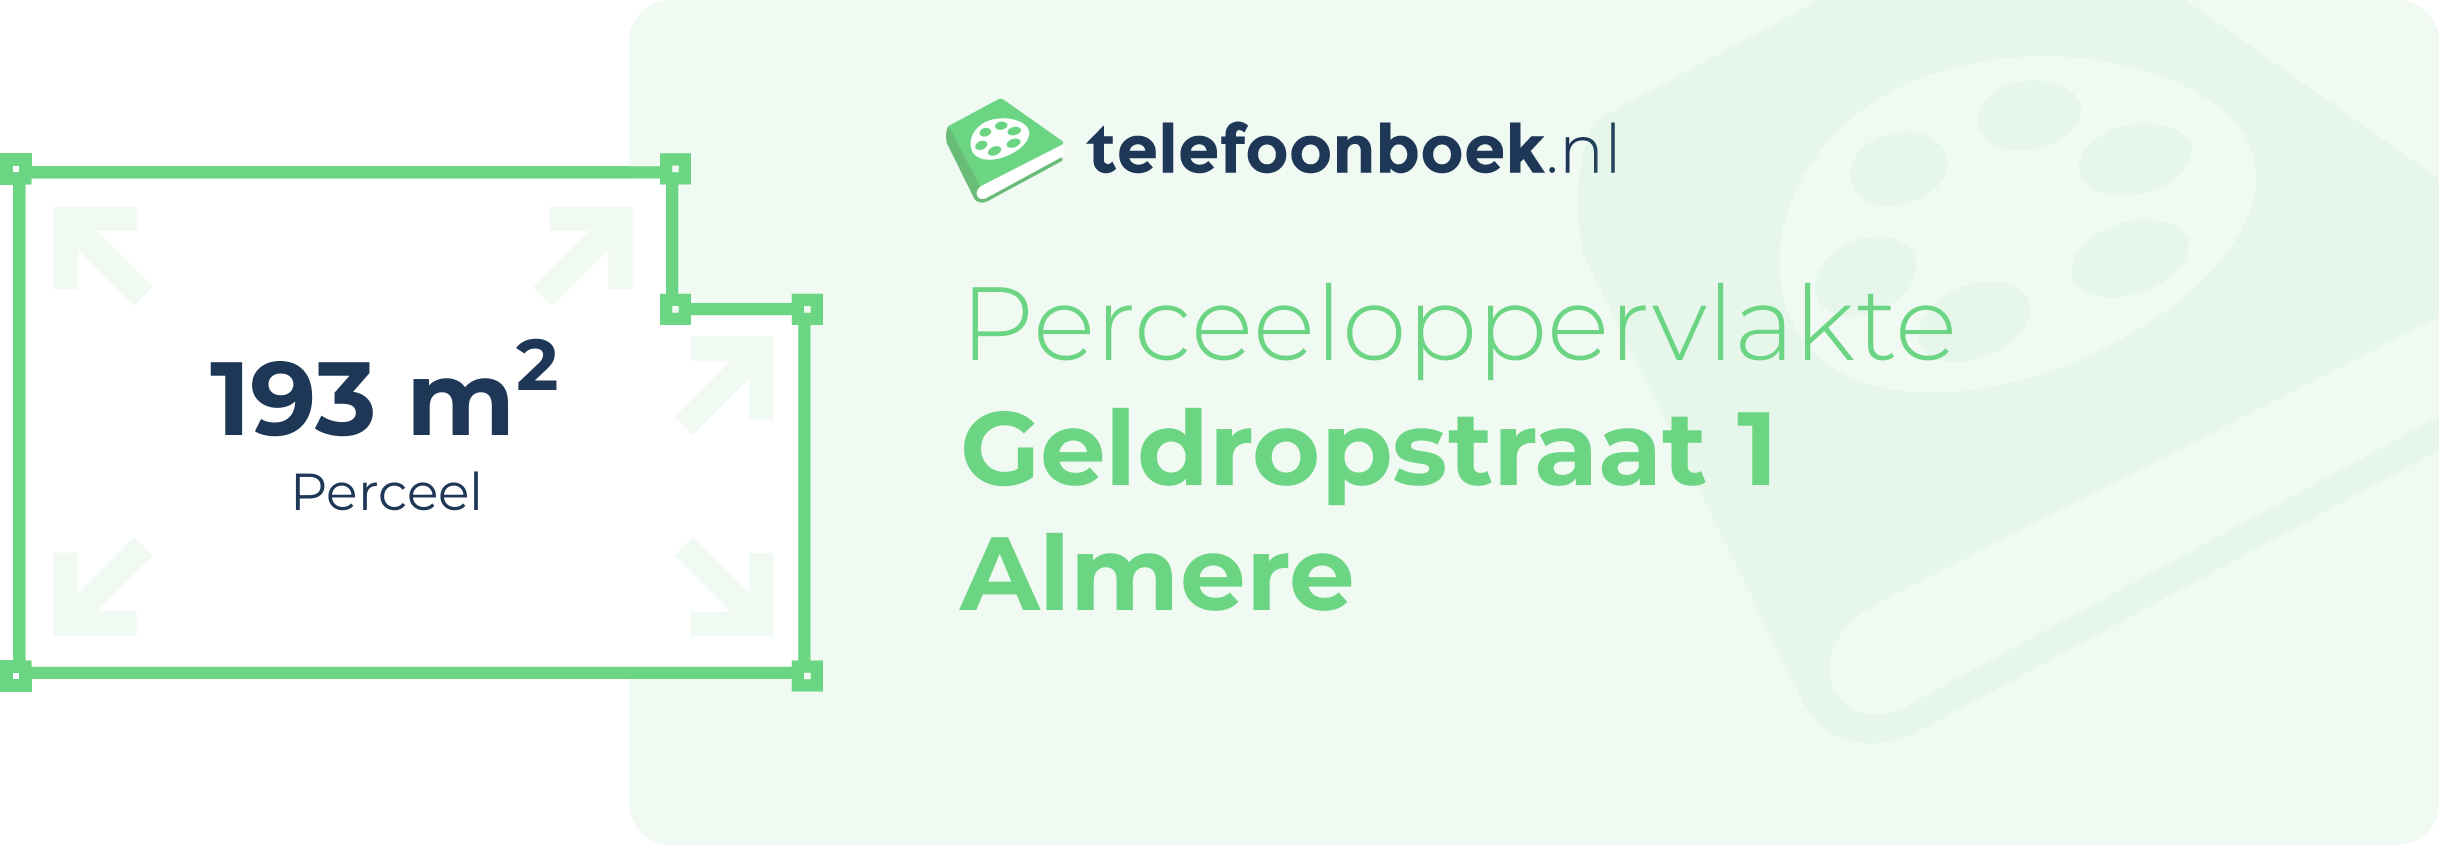 Perceeloppervlakte Geldropstraat 1 Almere